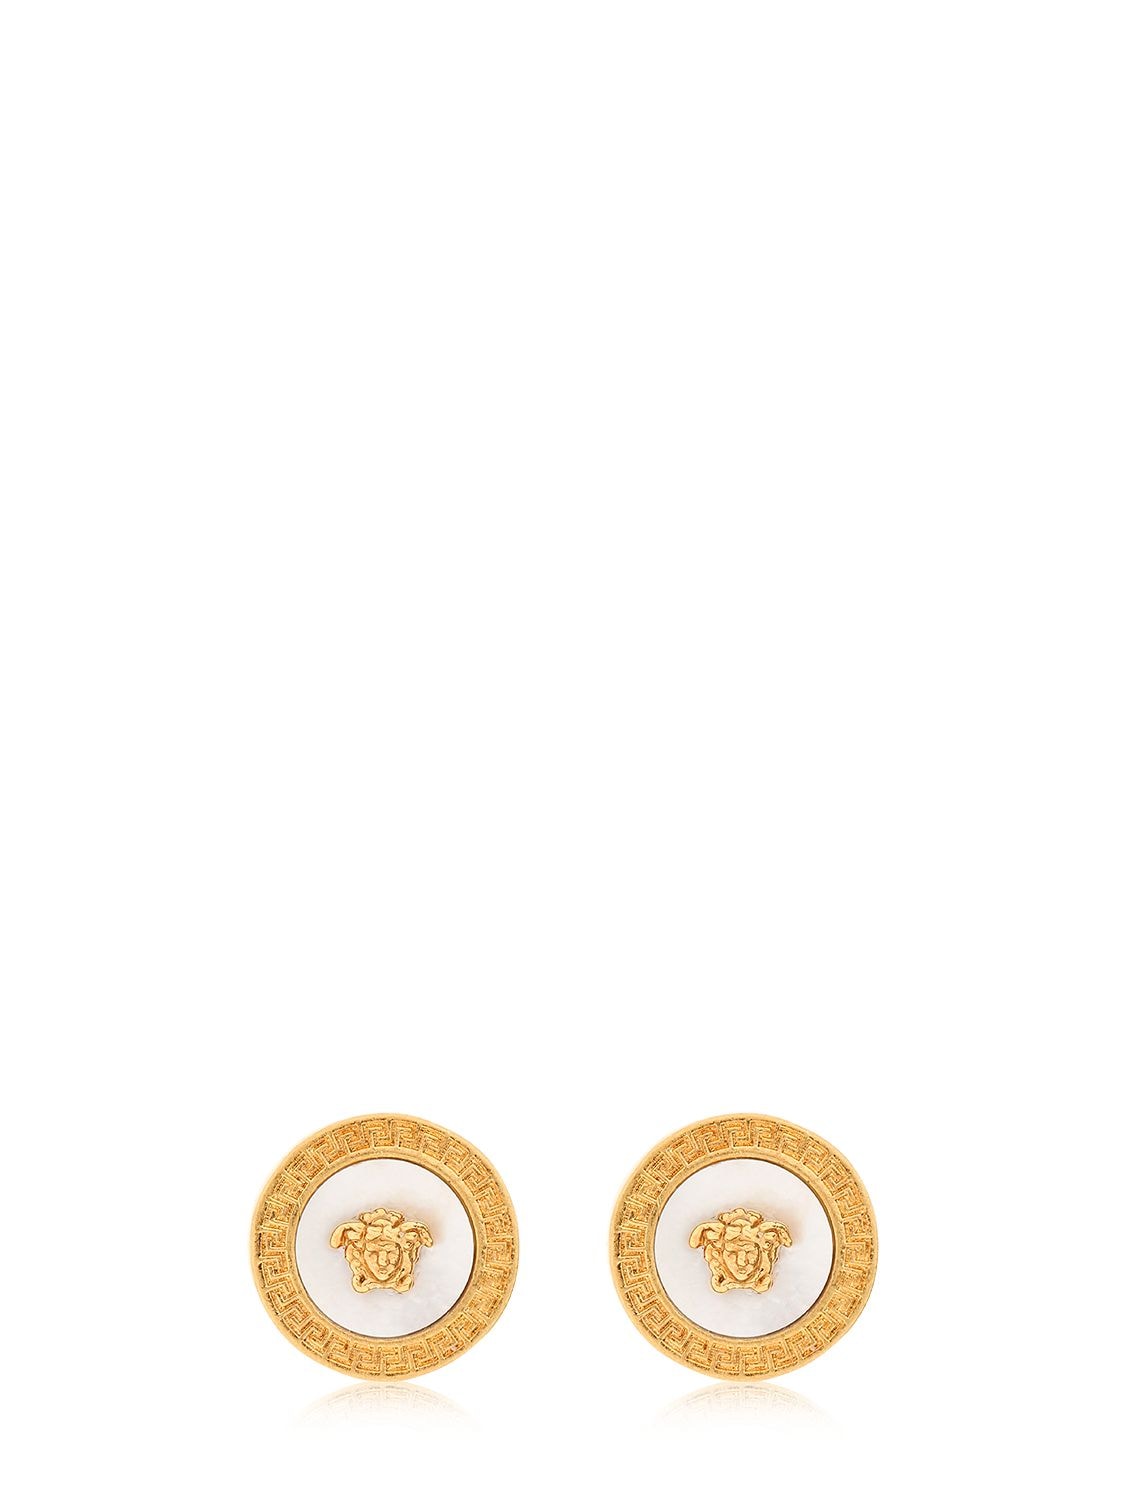 Versace Medusa Mother Of Pearl Stud Earrings In Gold/white | ModeSens